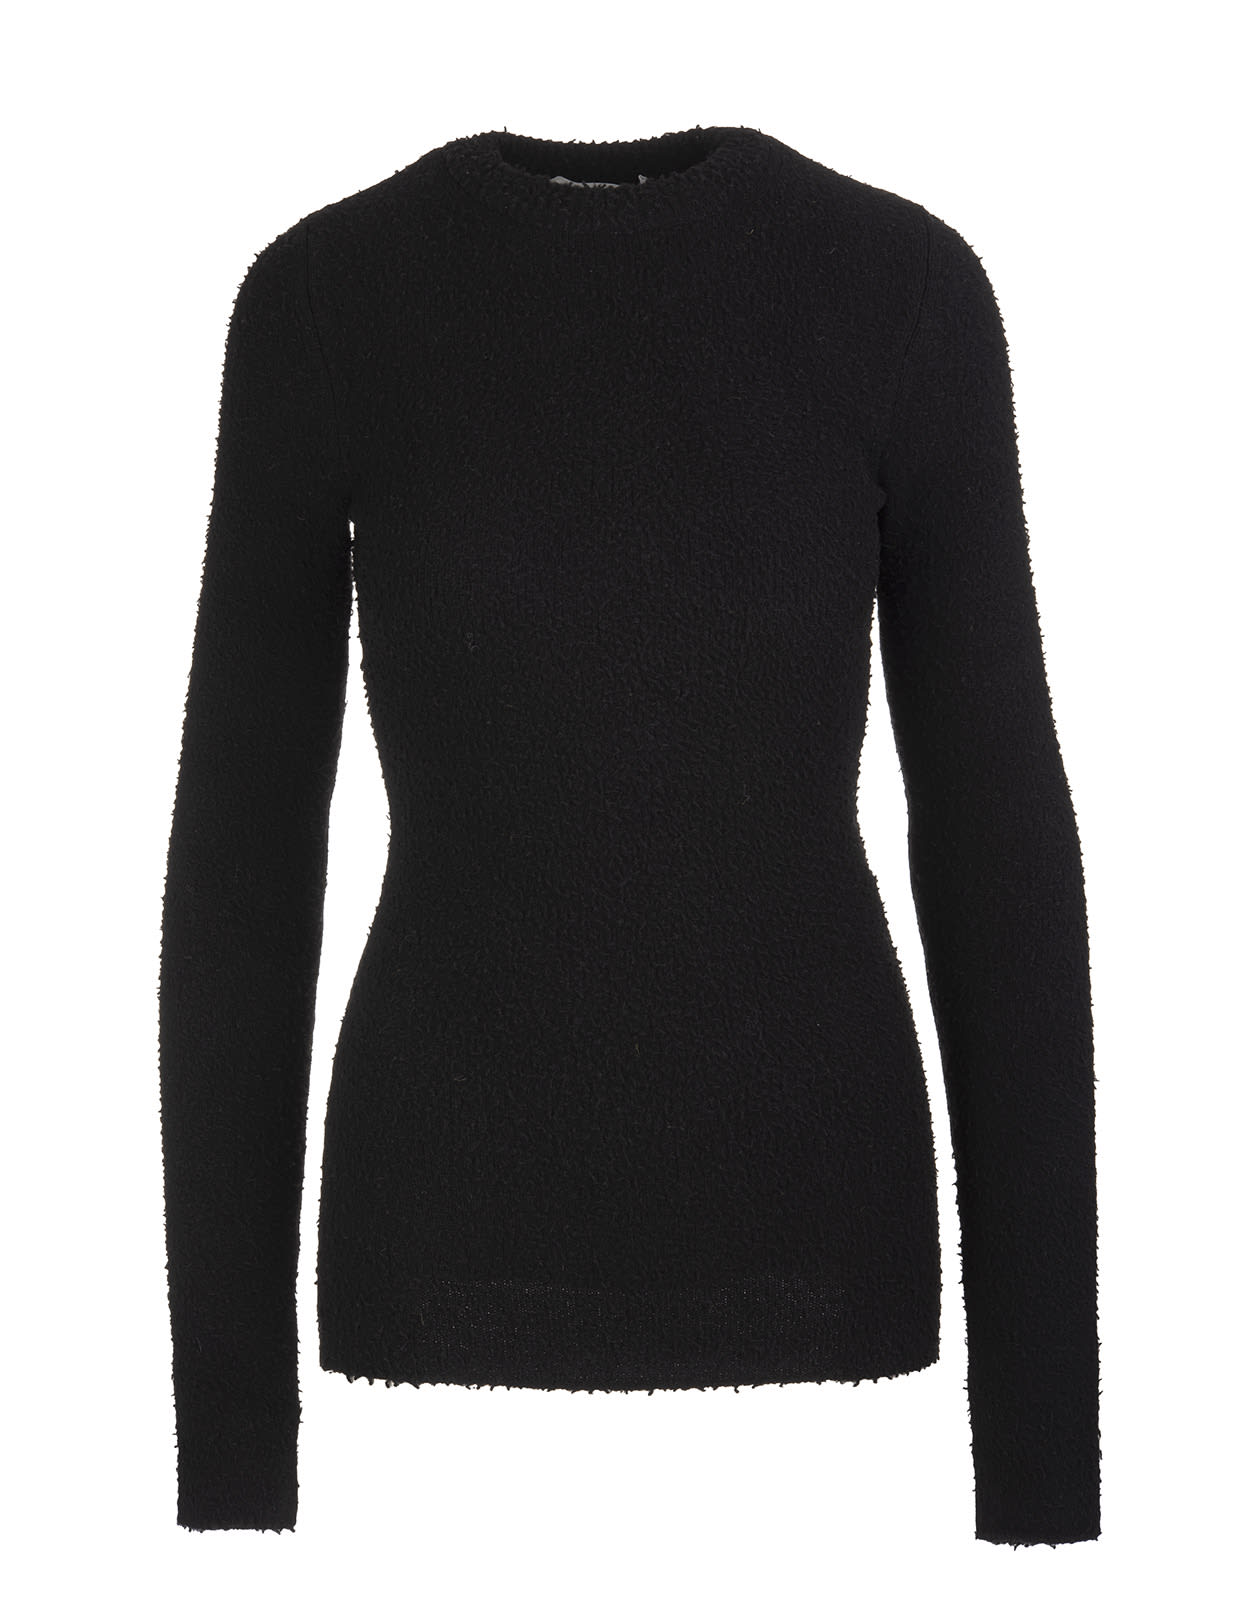 Max Mara Black Gange Sweater